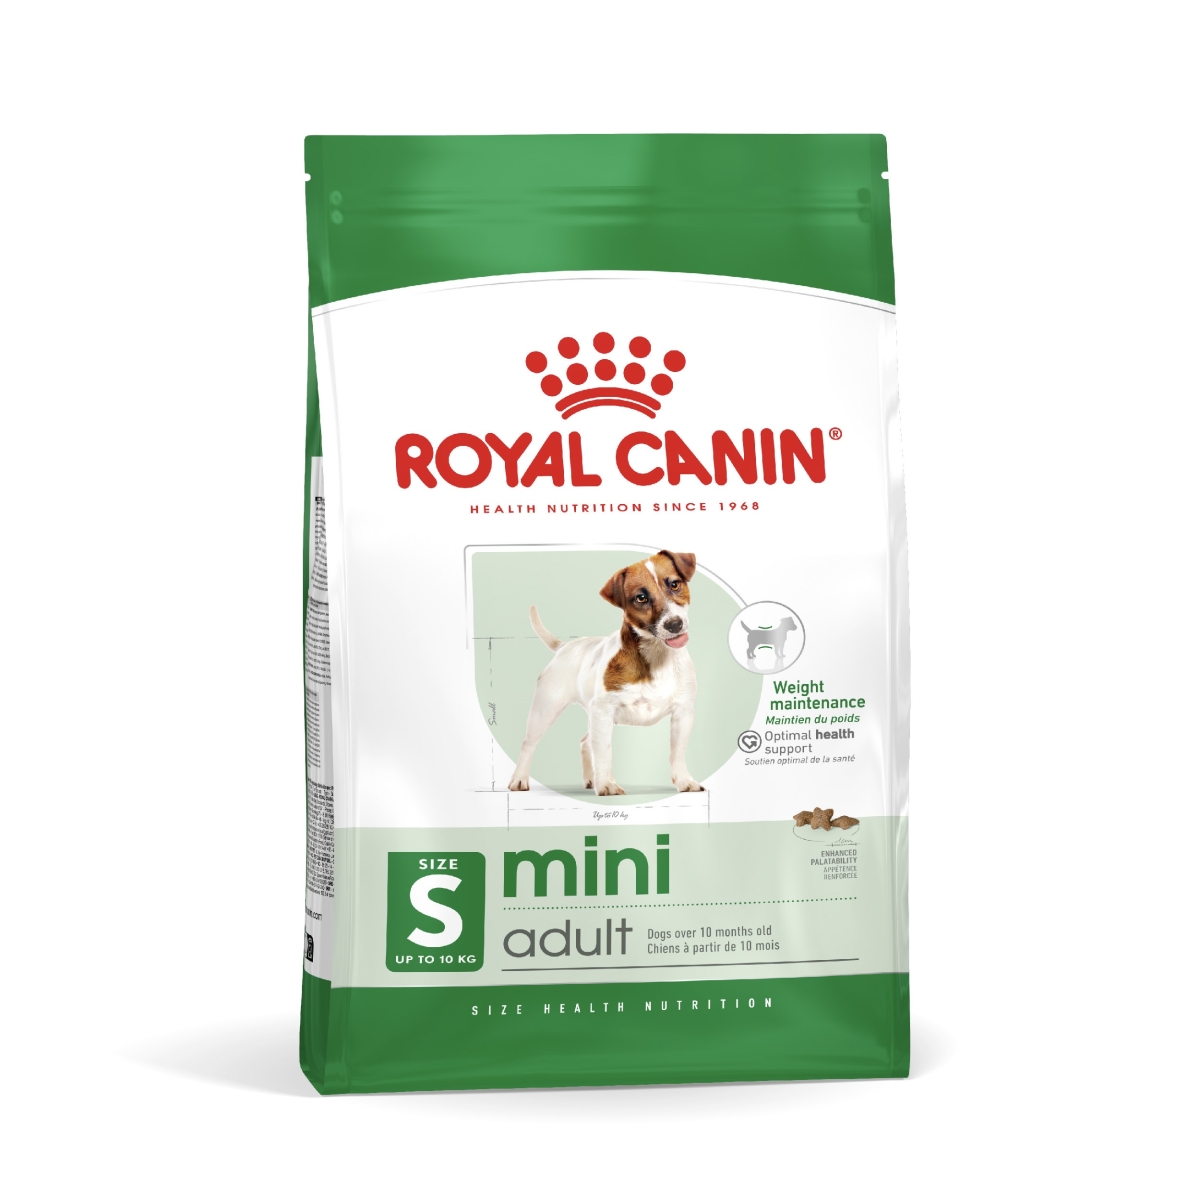 Royal Canin koeratoit väikest kasvu koertele 8 kg